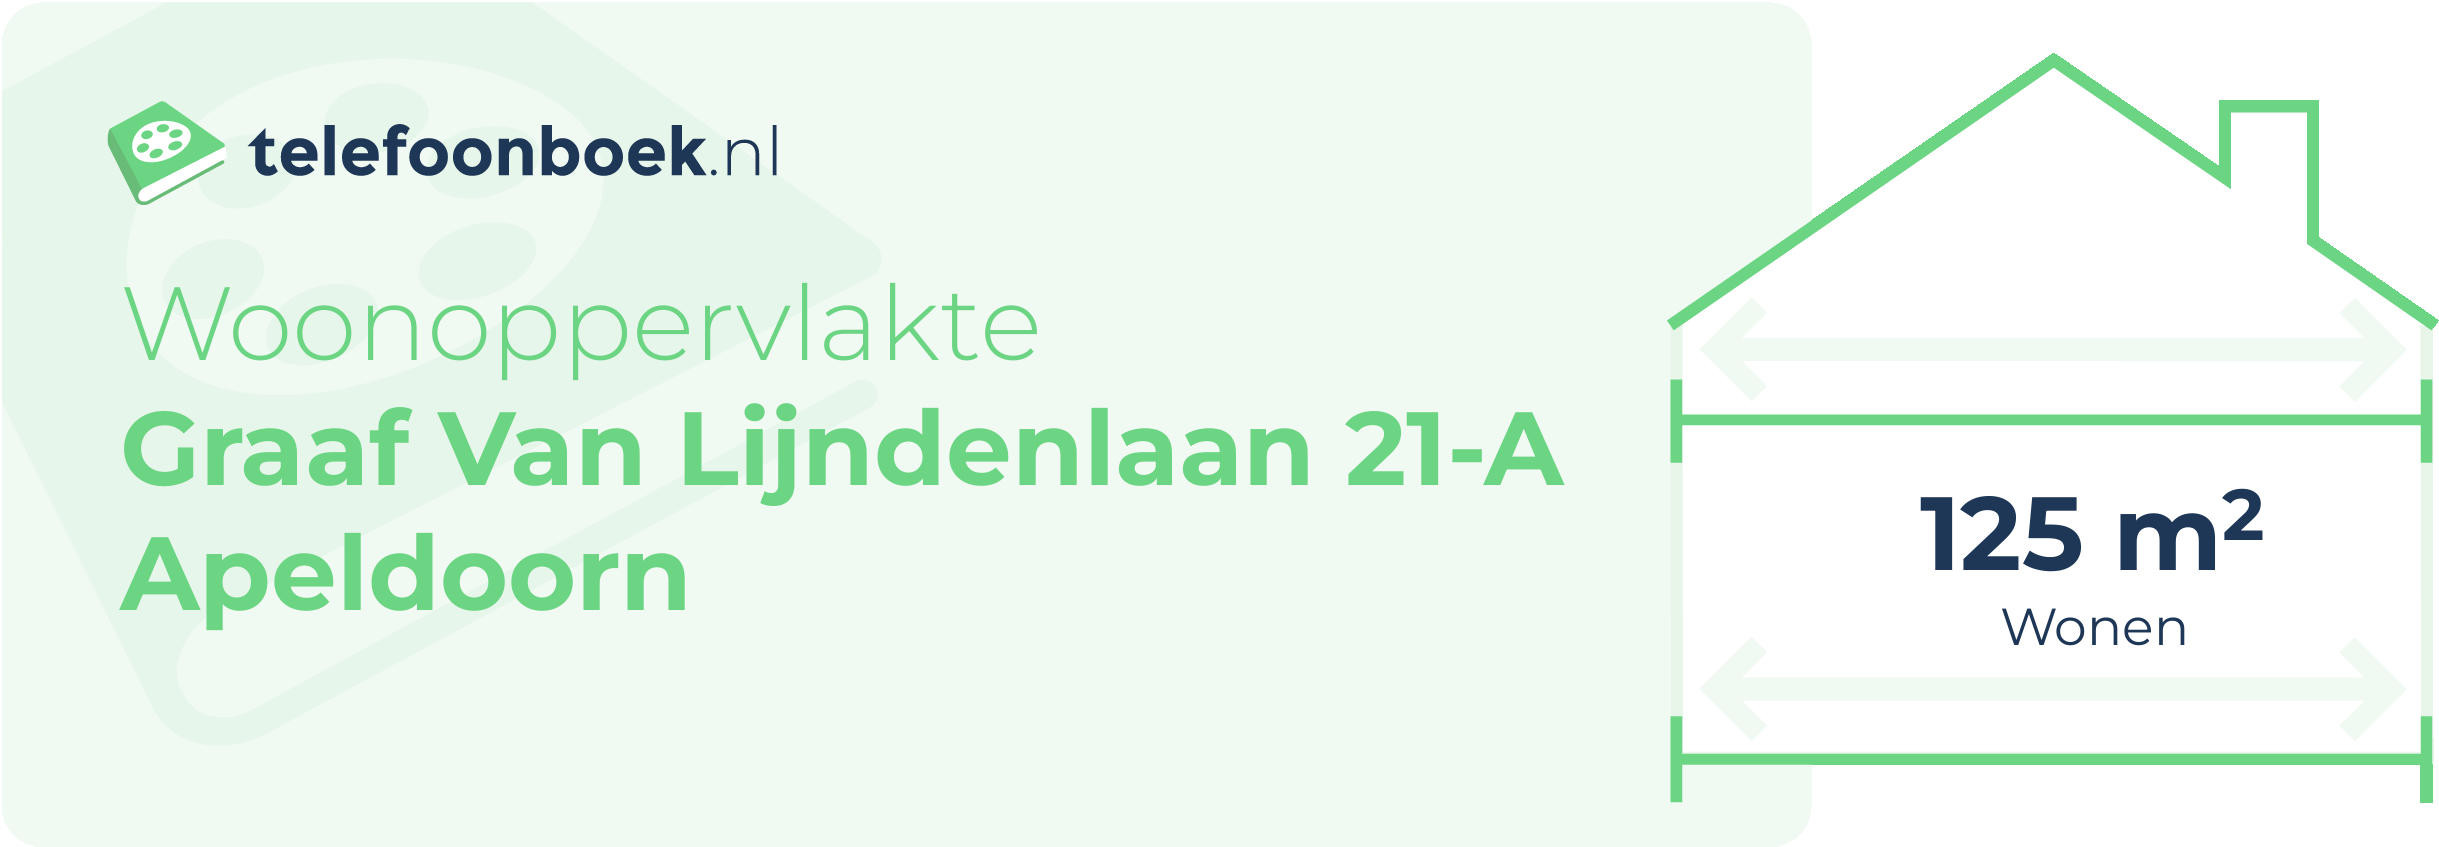 Woonoppervlakte Graaf Van Lijndenlaan 21-A Apeldoorn